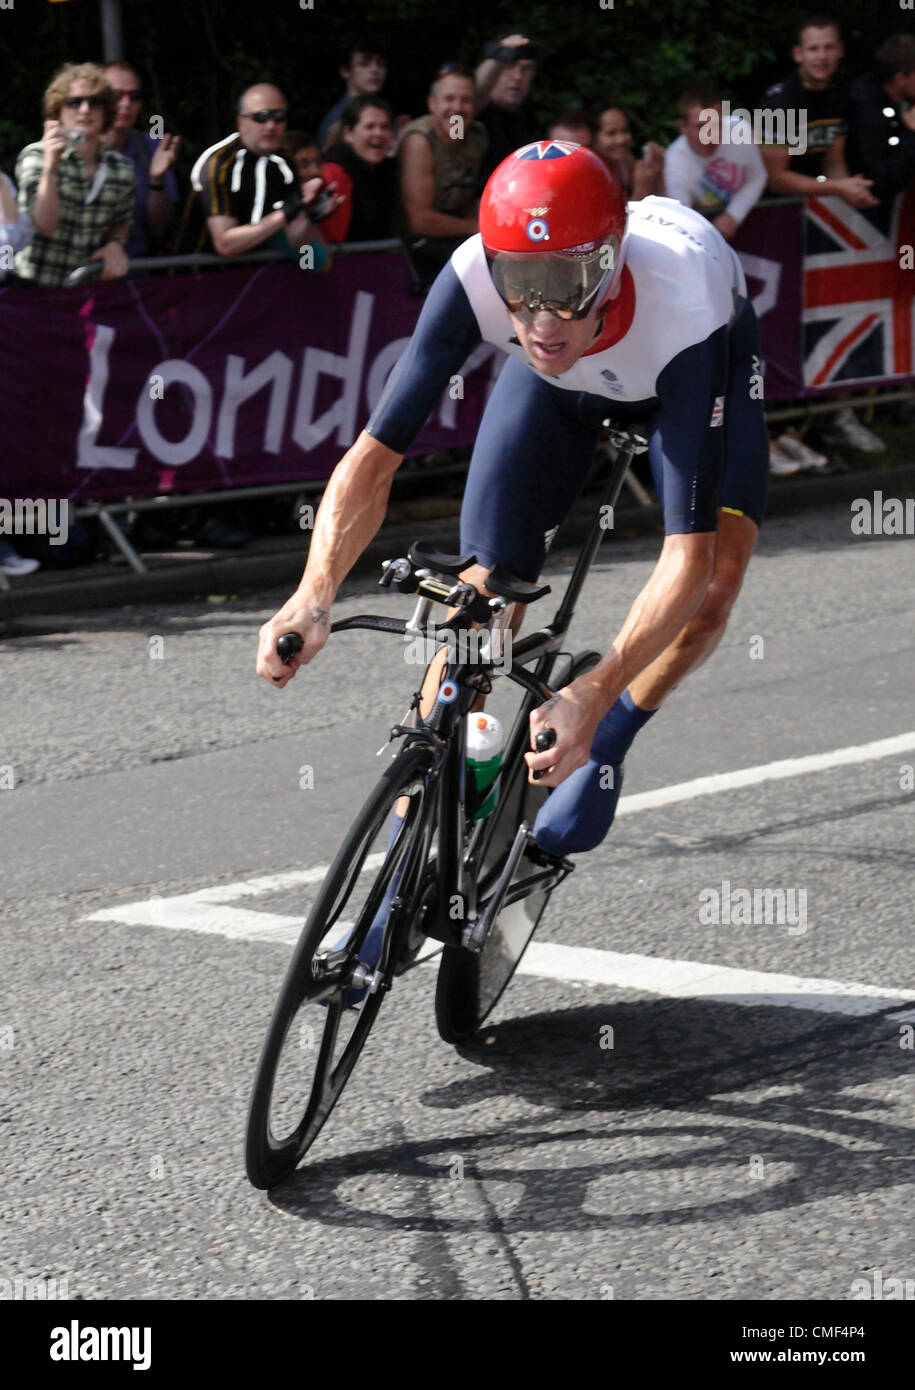 Sir Bradley Wiggins 2012 médaillé d'or aux Jeux Olympiques 1 août 2012 Mens Road Cycling Time Trial Sept Collines Rd Surrey UK Banque D'Images